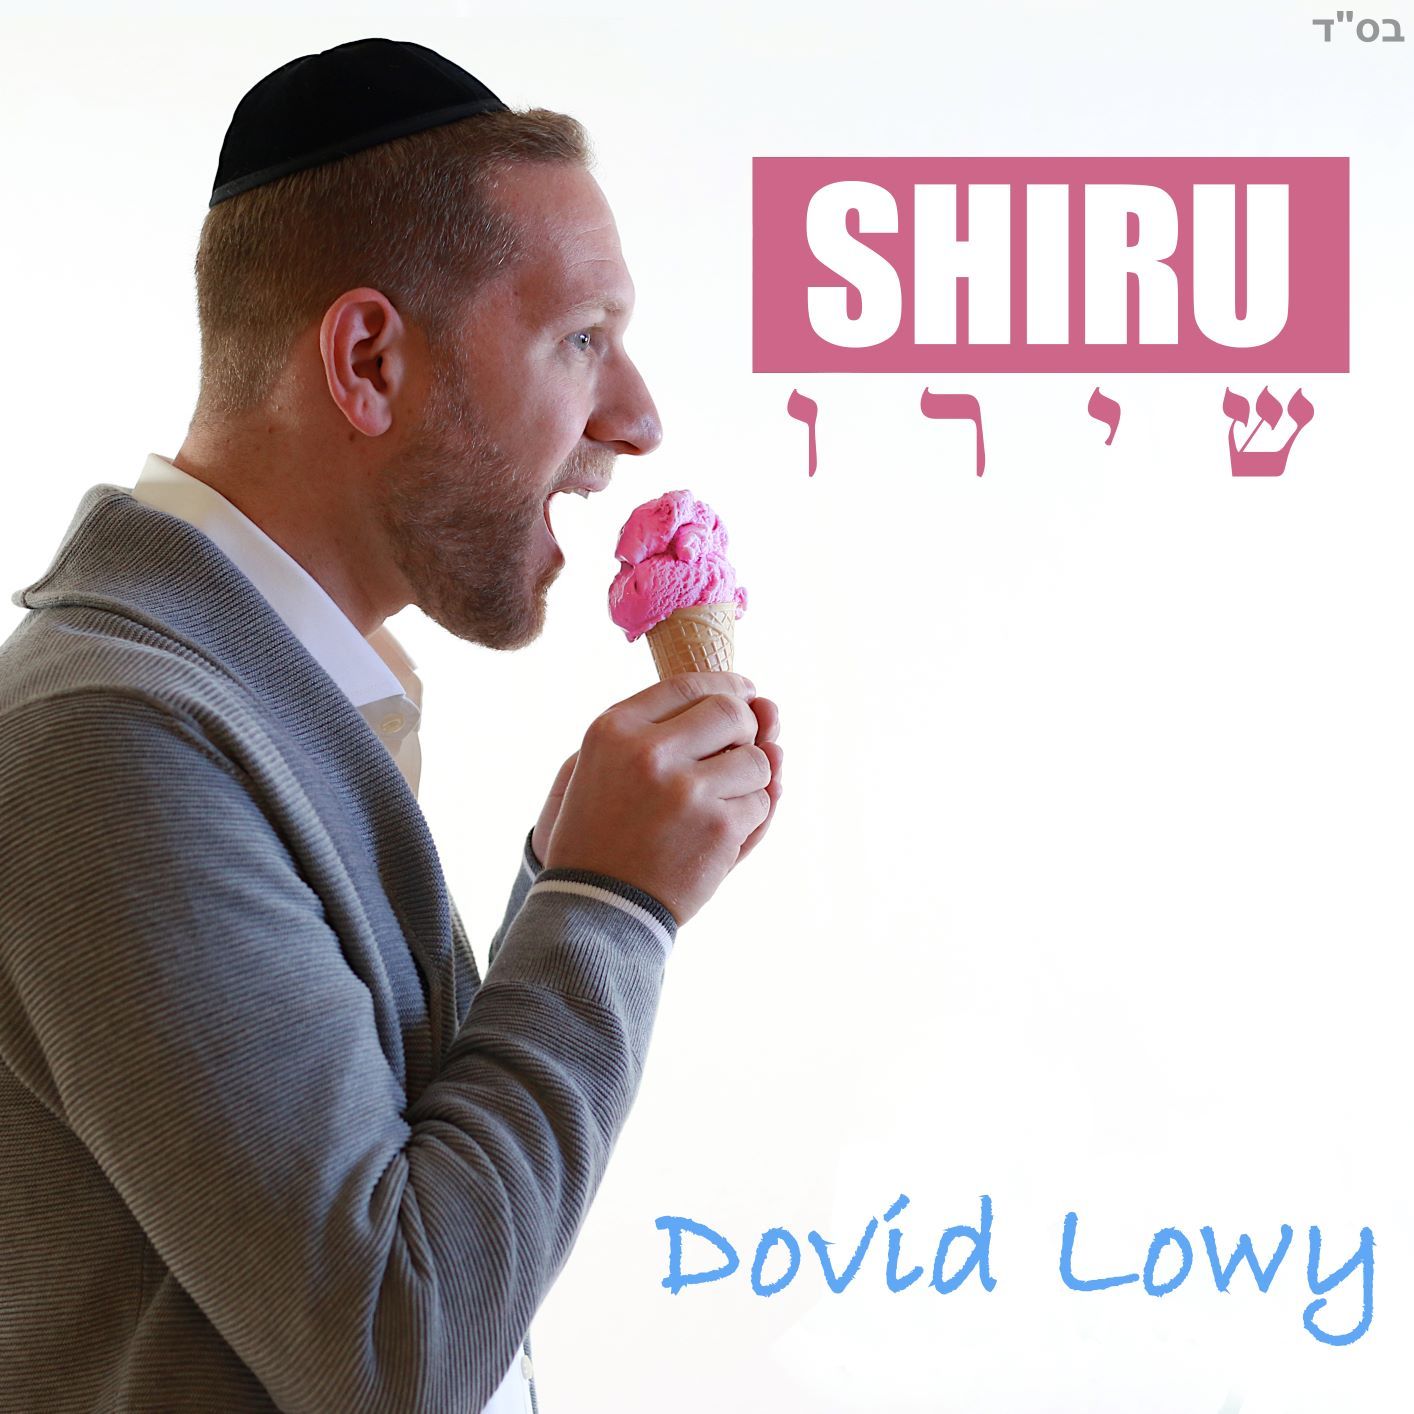 Dovid Lowy - Shiru (Single)